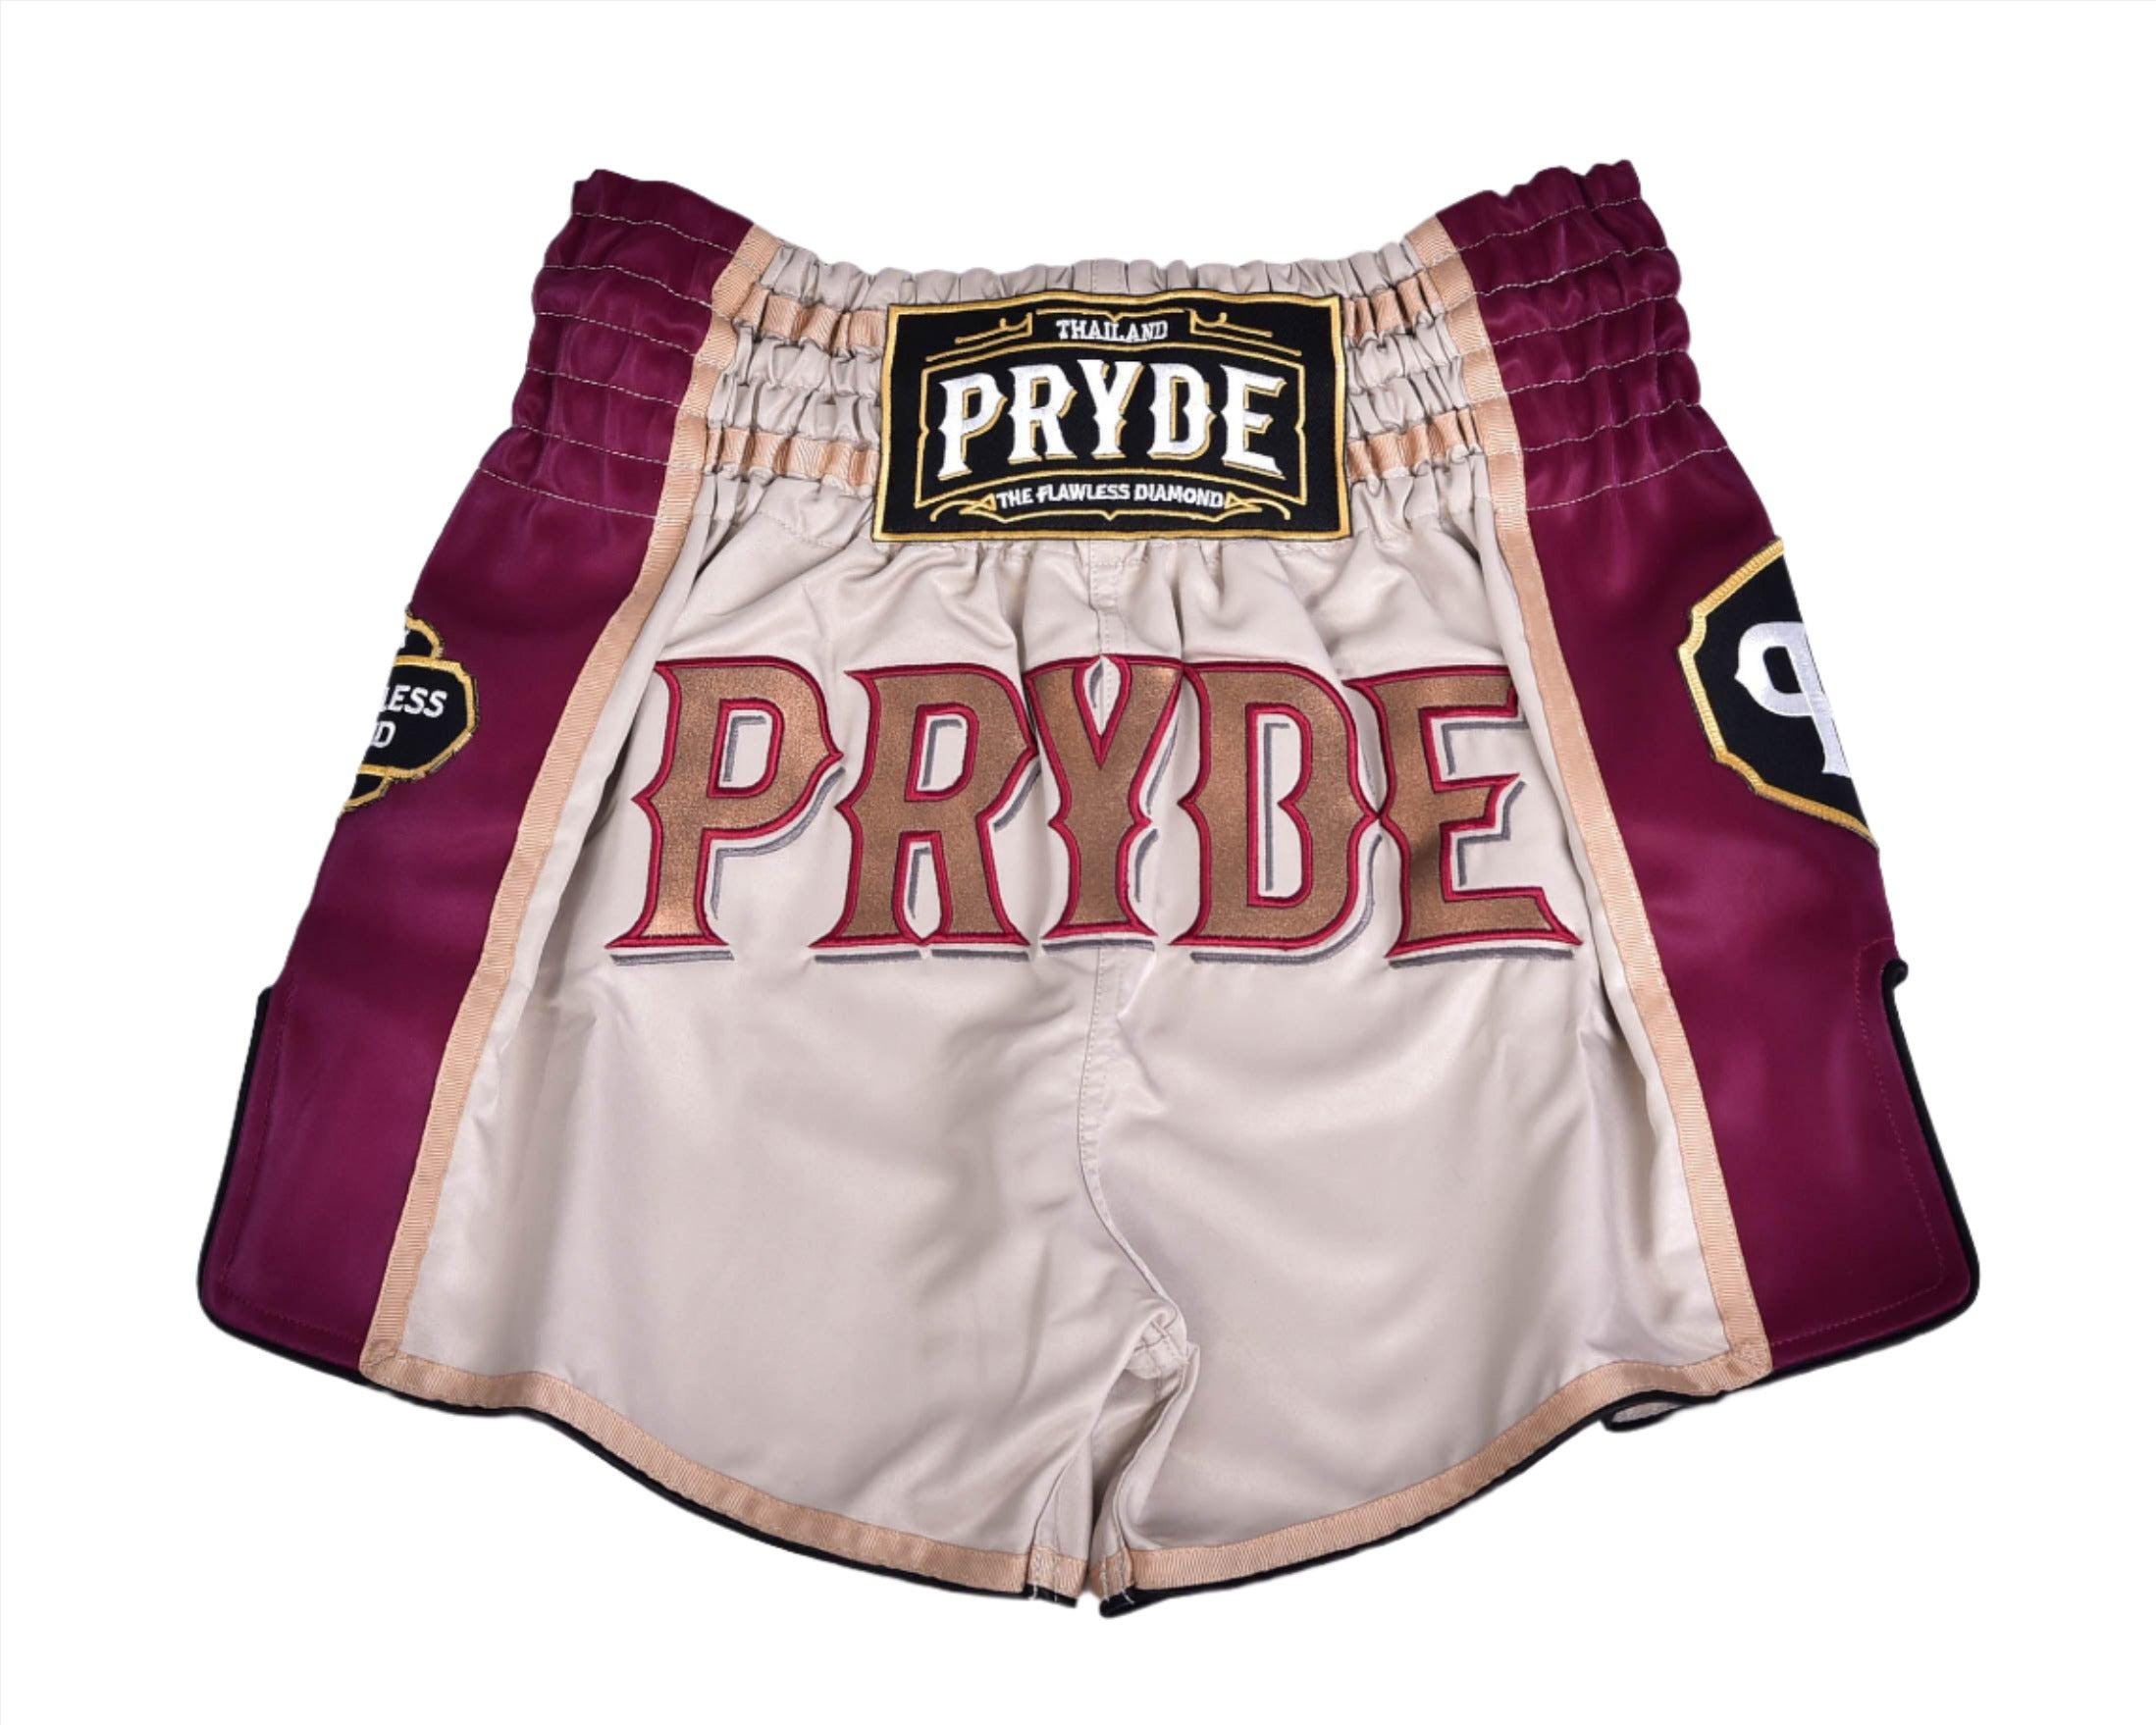 PRYDE Muay Thai Shorts - Beige & Burgundy - Muay Thailand